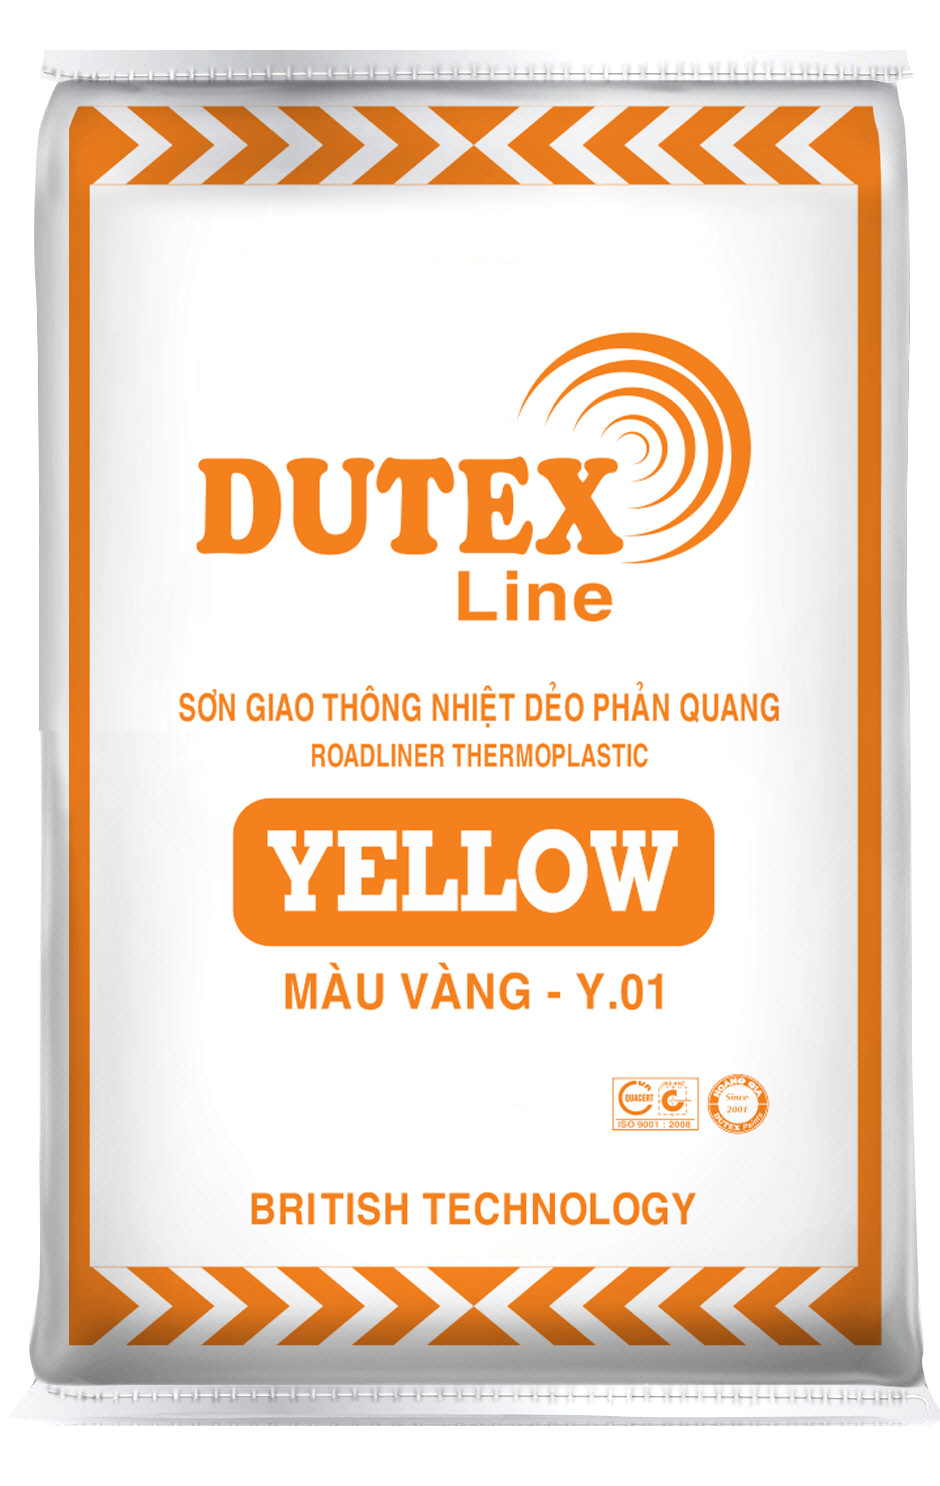 SƠN GIAO THÔNG NHIỆT DẺO PHẢN QUANG DUTEX LINE - YELLOW Y01